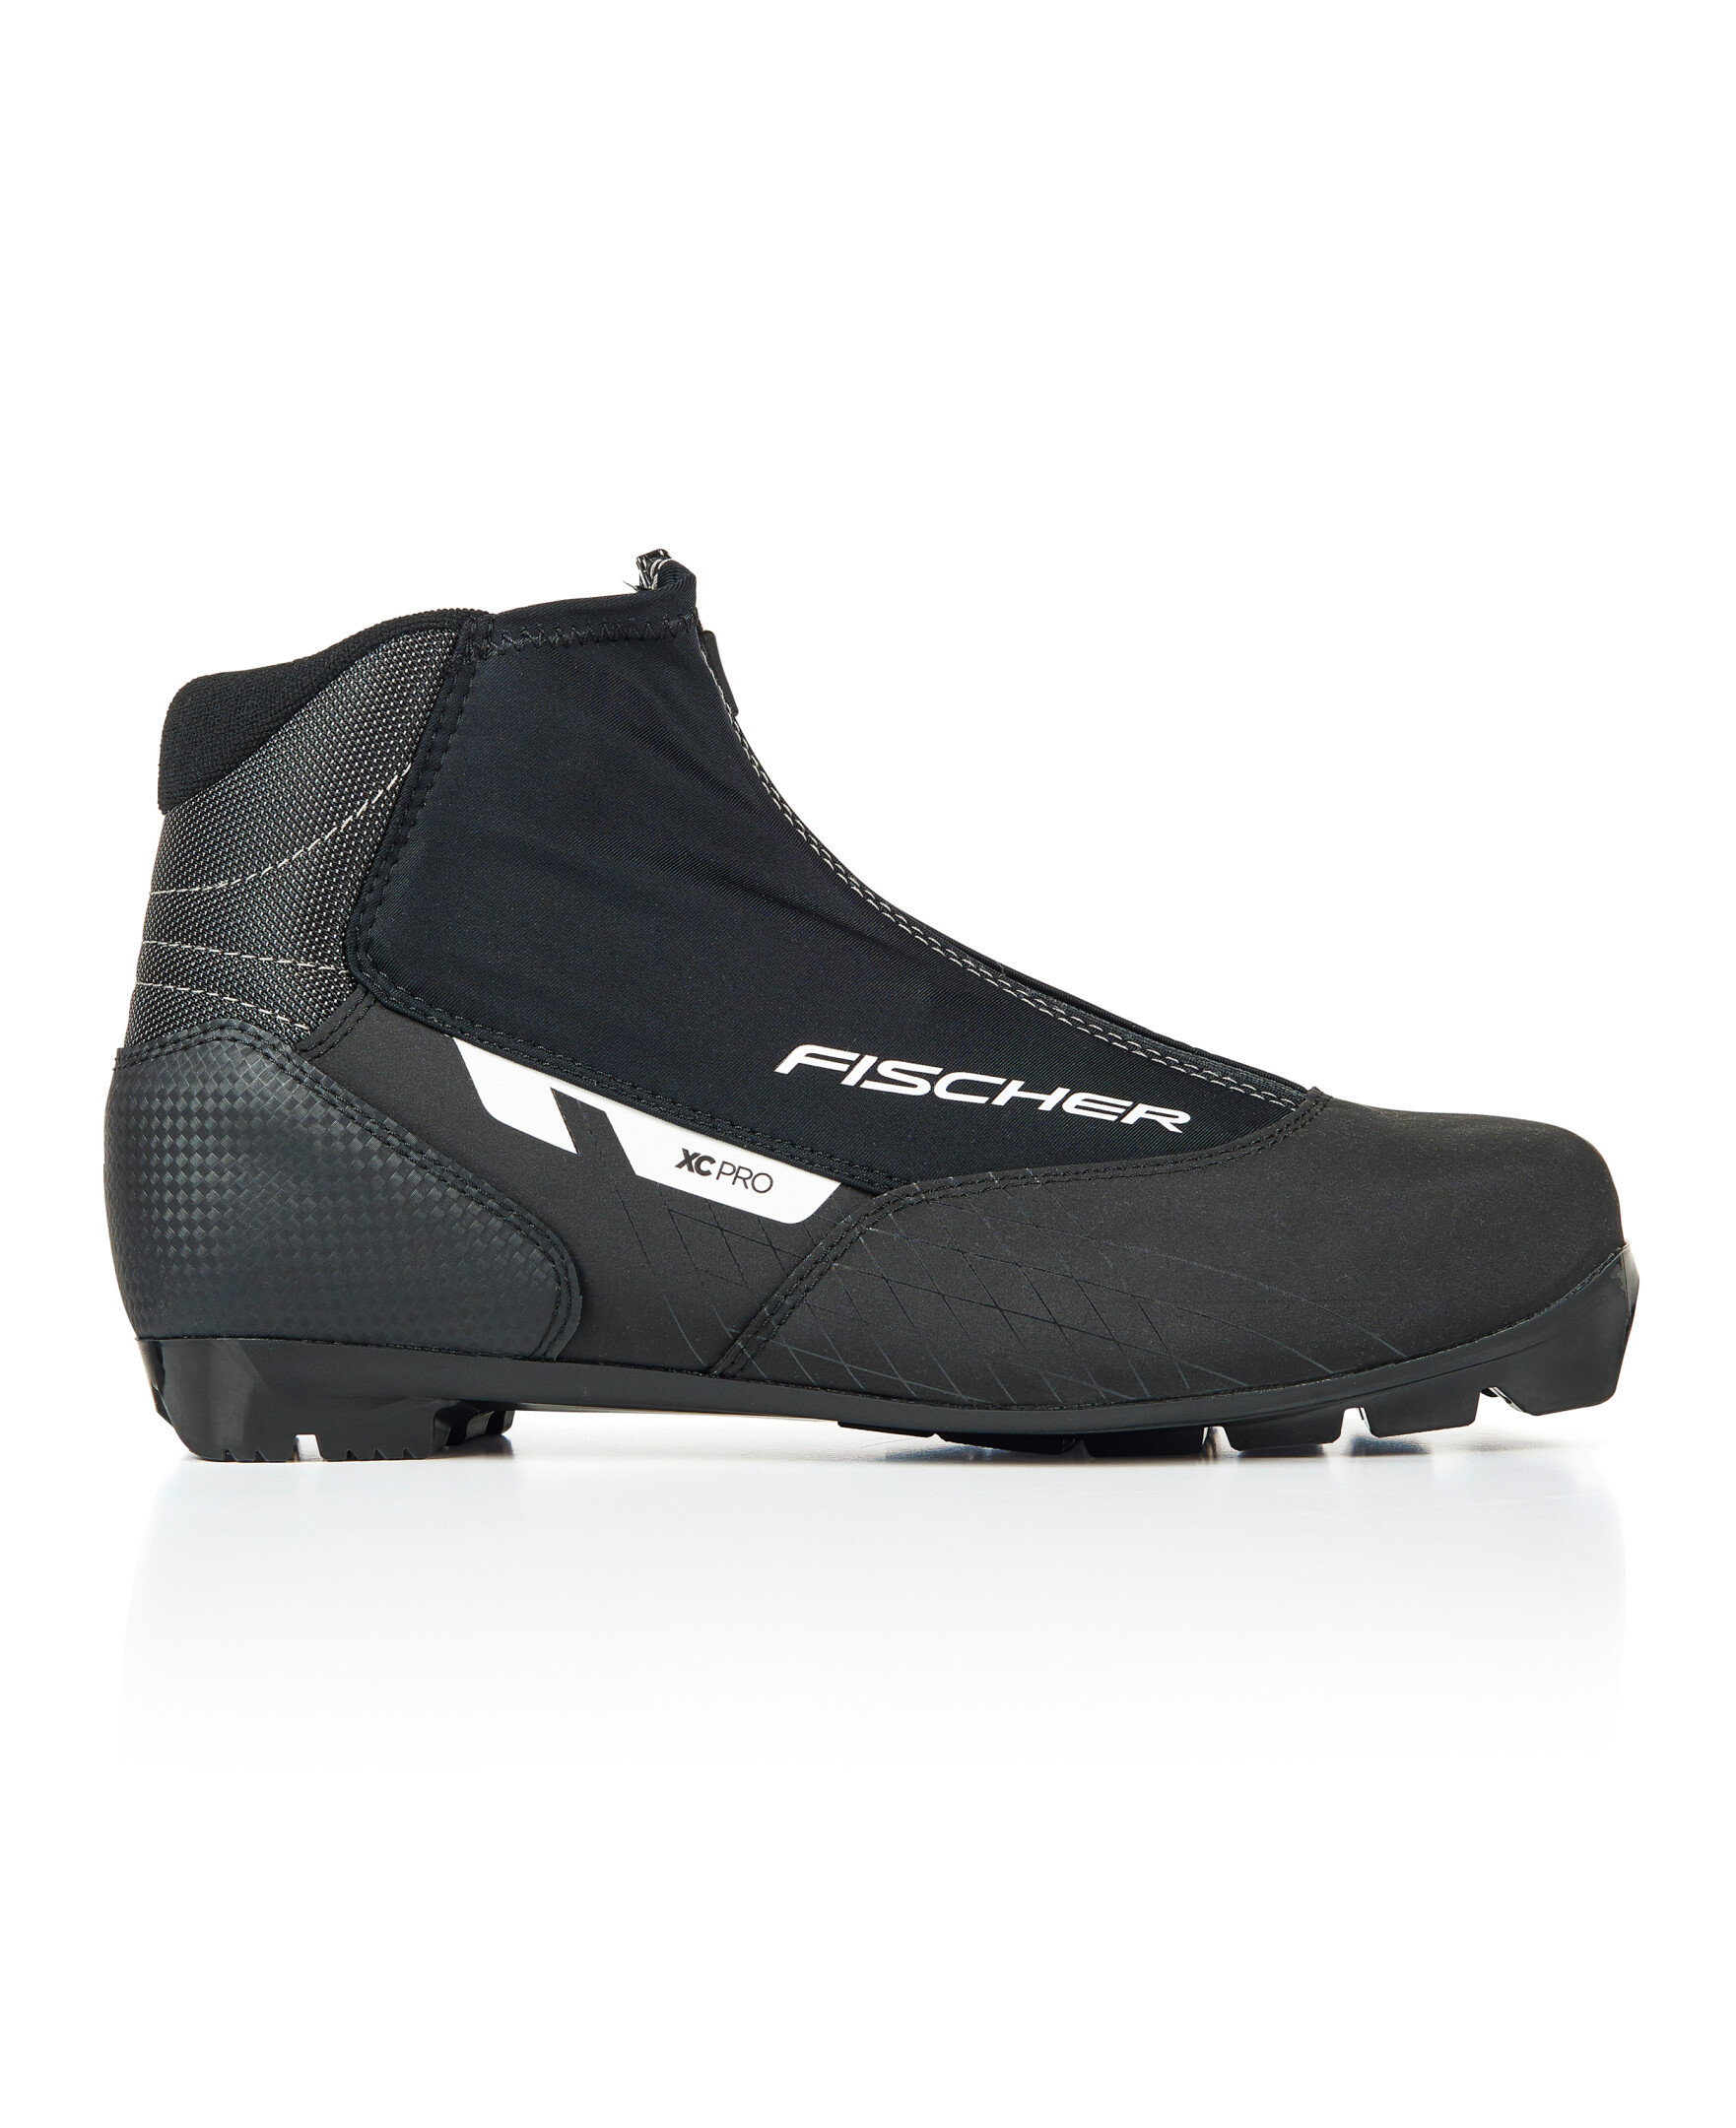 Fischer XC Pro XC Ski Boots Mens